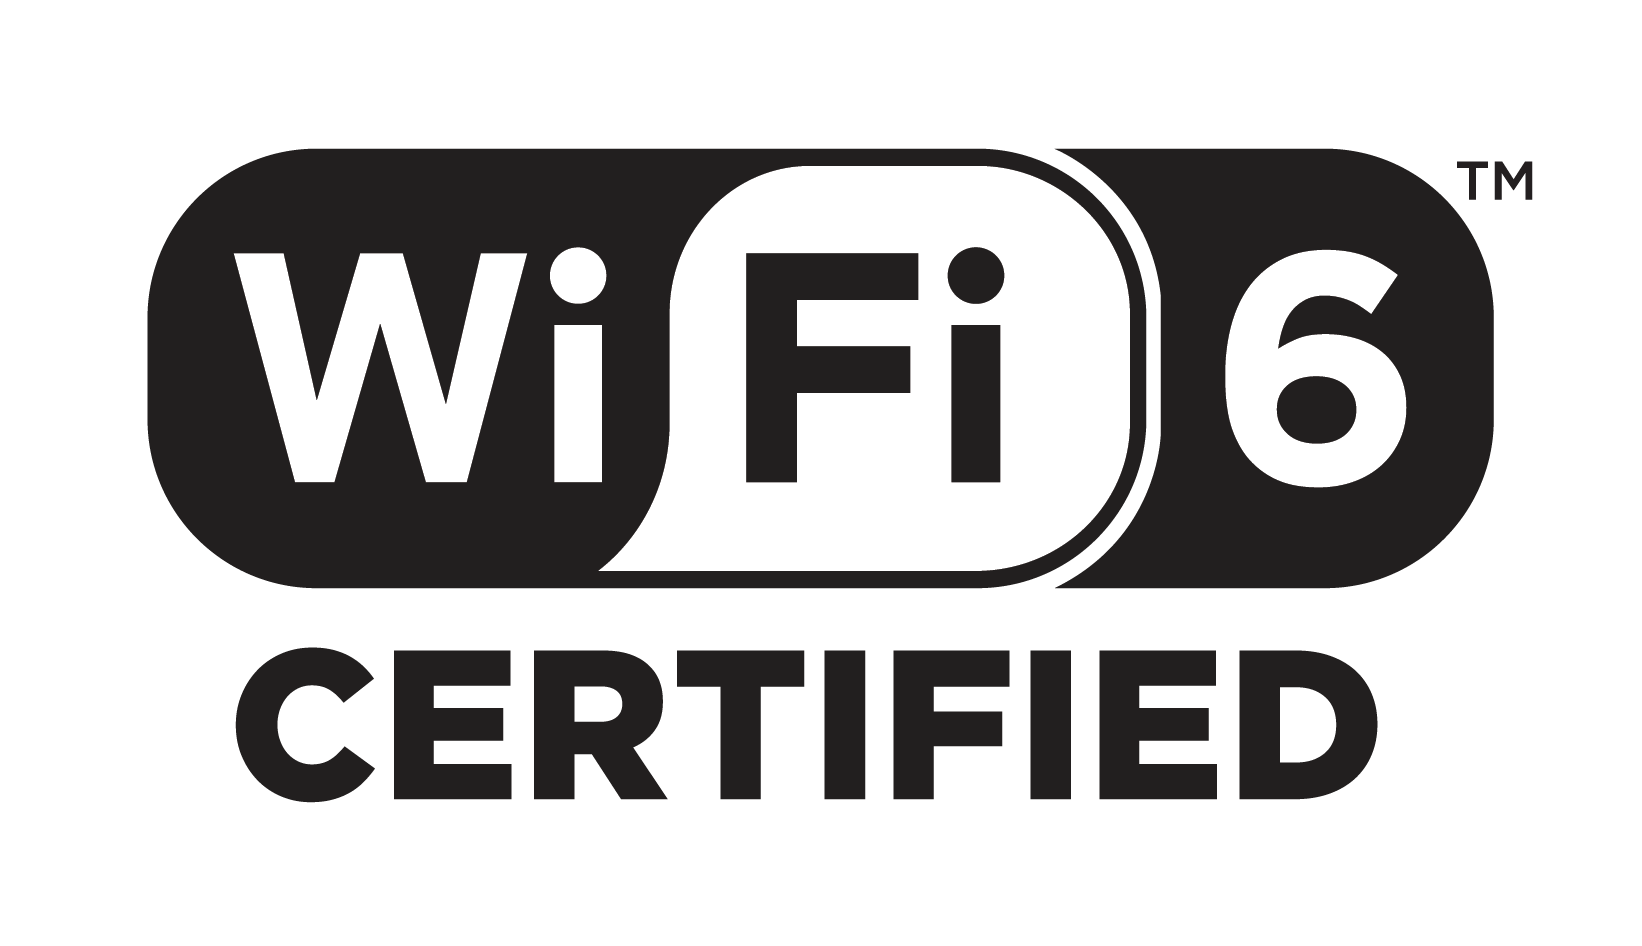 Программа сертификации Wi-Fi 6 стартует, так как работает более быстрый Wi-Fi